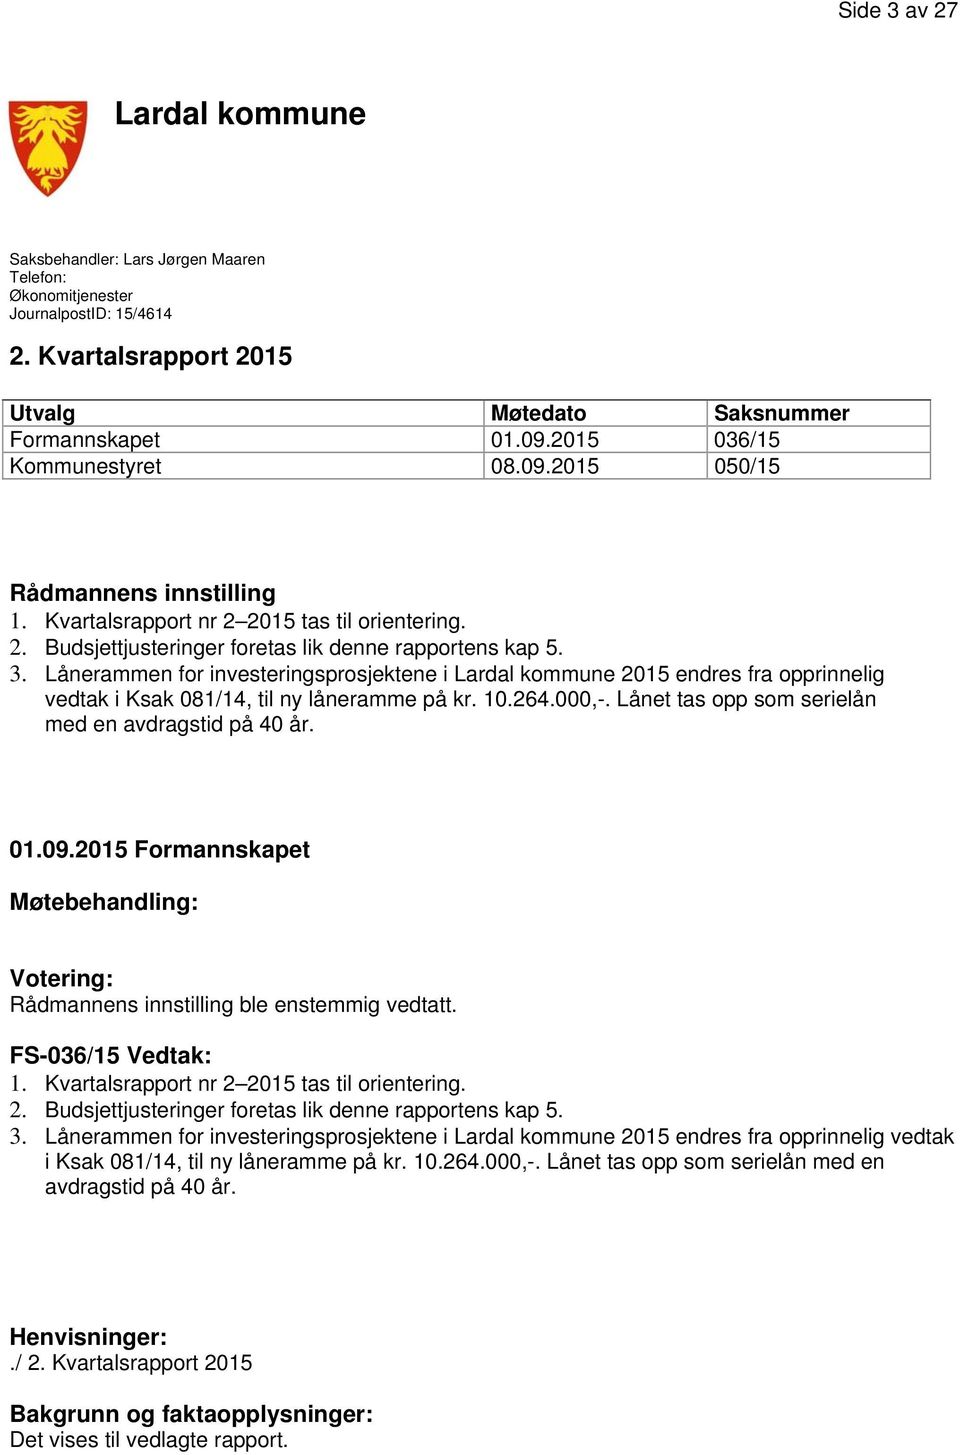 Lånerammen for investeringsprosjektene i Lardal kommune 2015 endres fra opprinnelig vedtak i Ksak 081/14, til ny låneramme på kr. 10.264.000,-. Lånet tas opp som serielån med en avdragstid på 40 år.